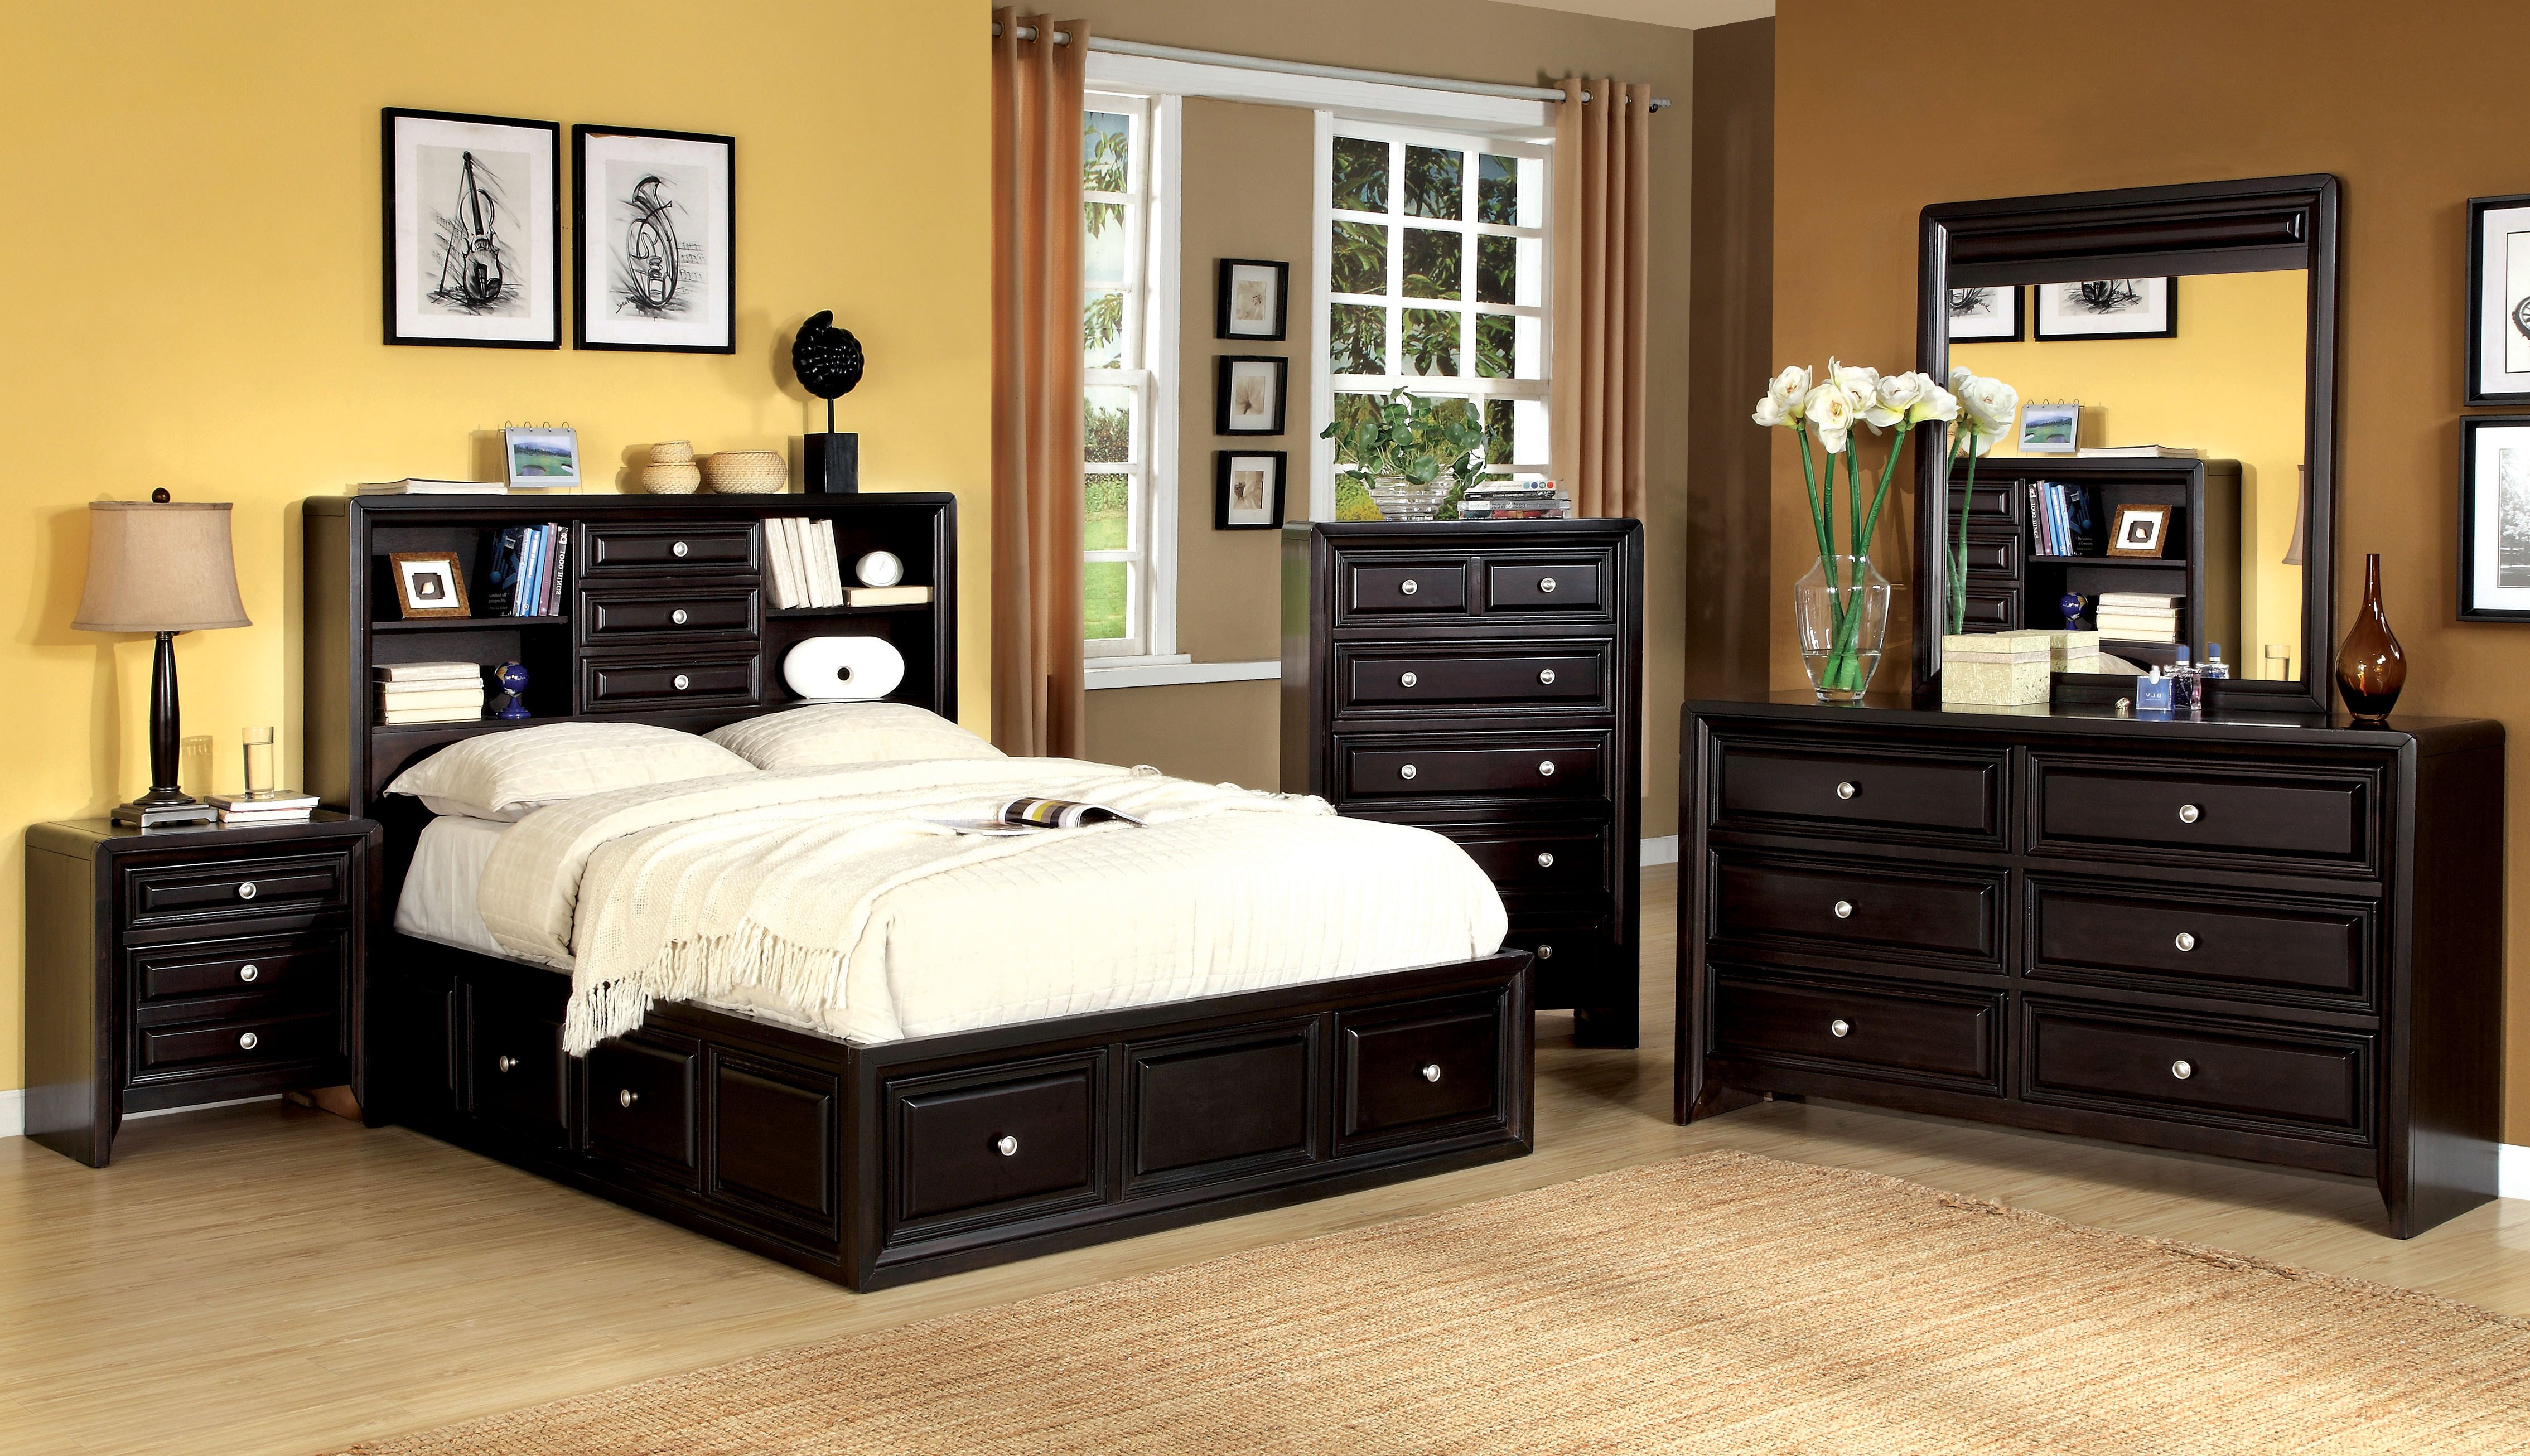 sears bedroom furniture set